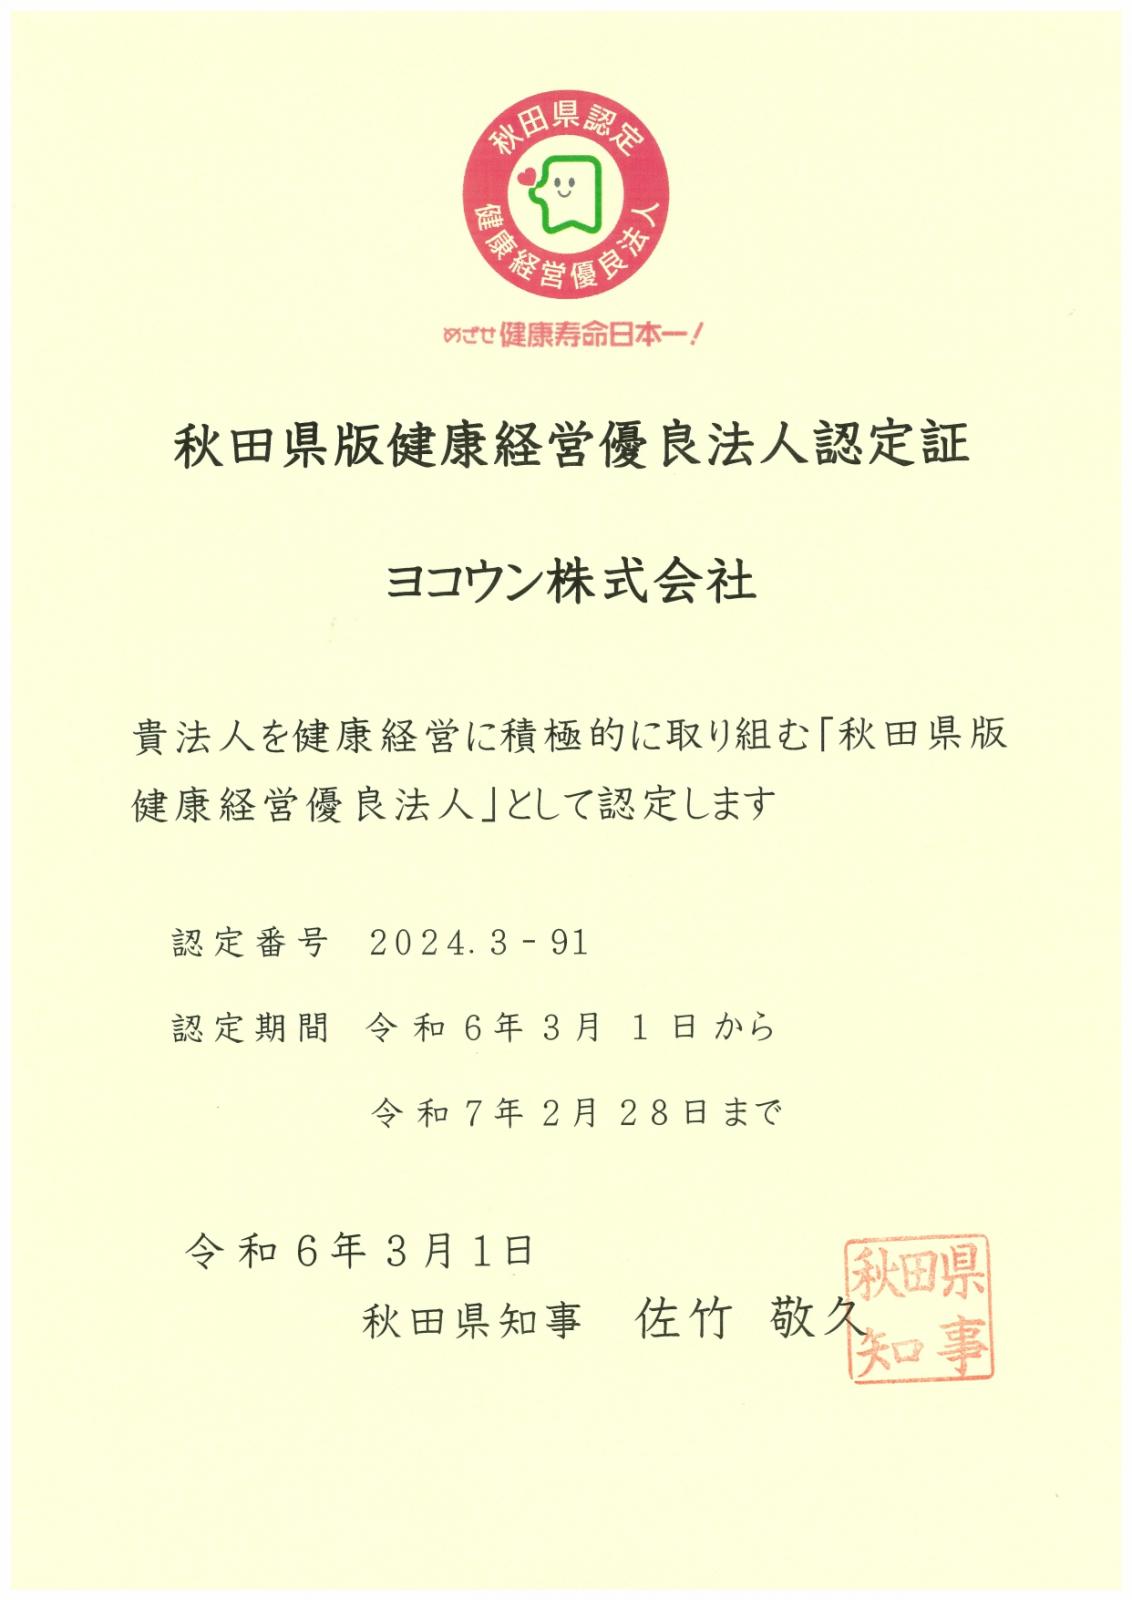 サムネイル:今年度も秋田県版健康経営優良法人に認定されました！